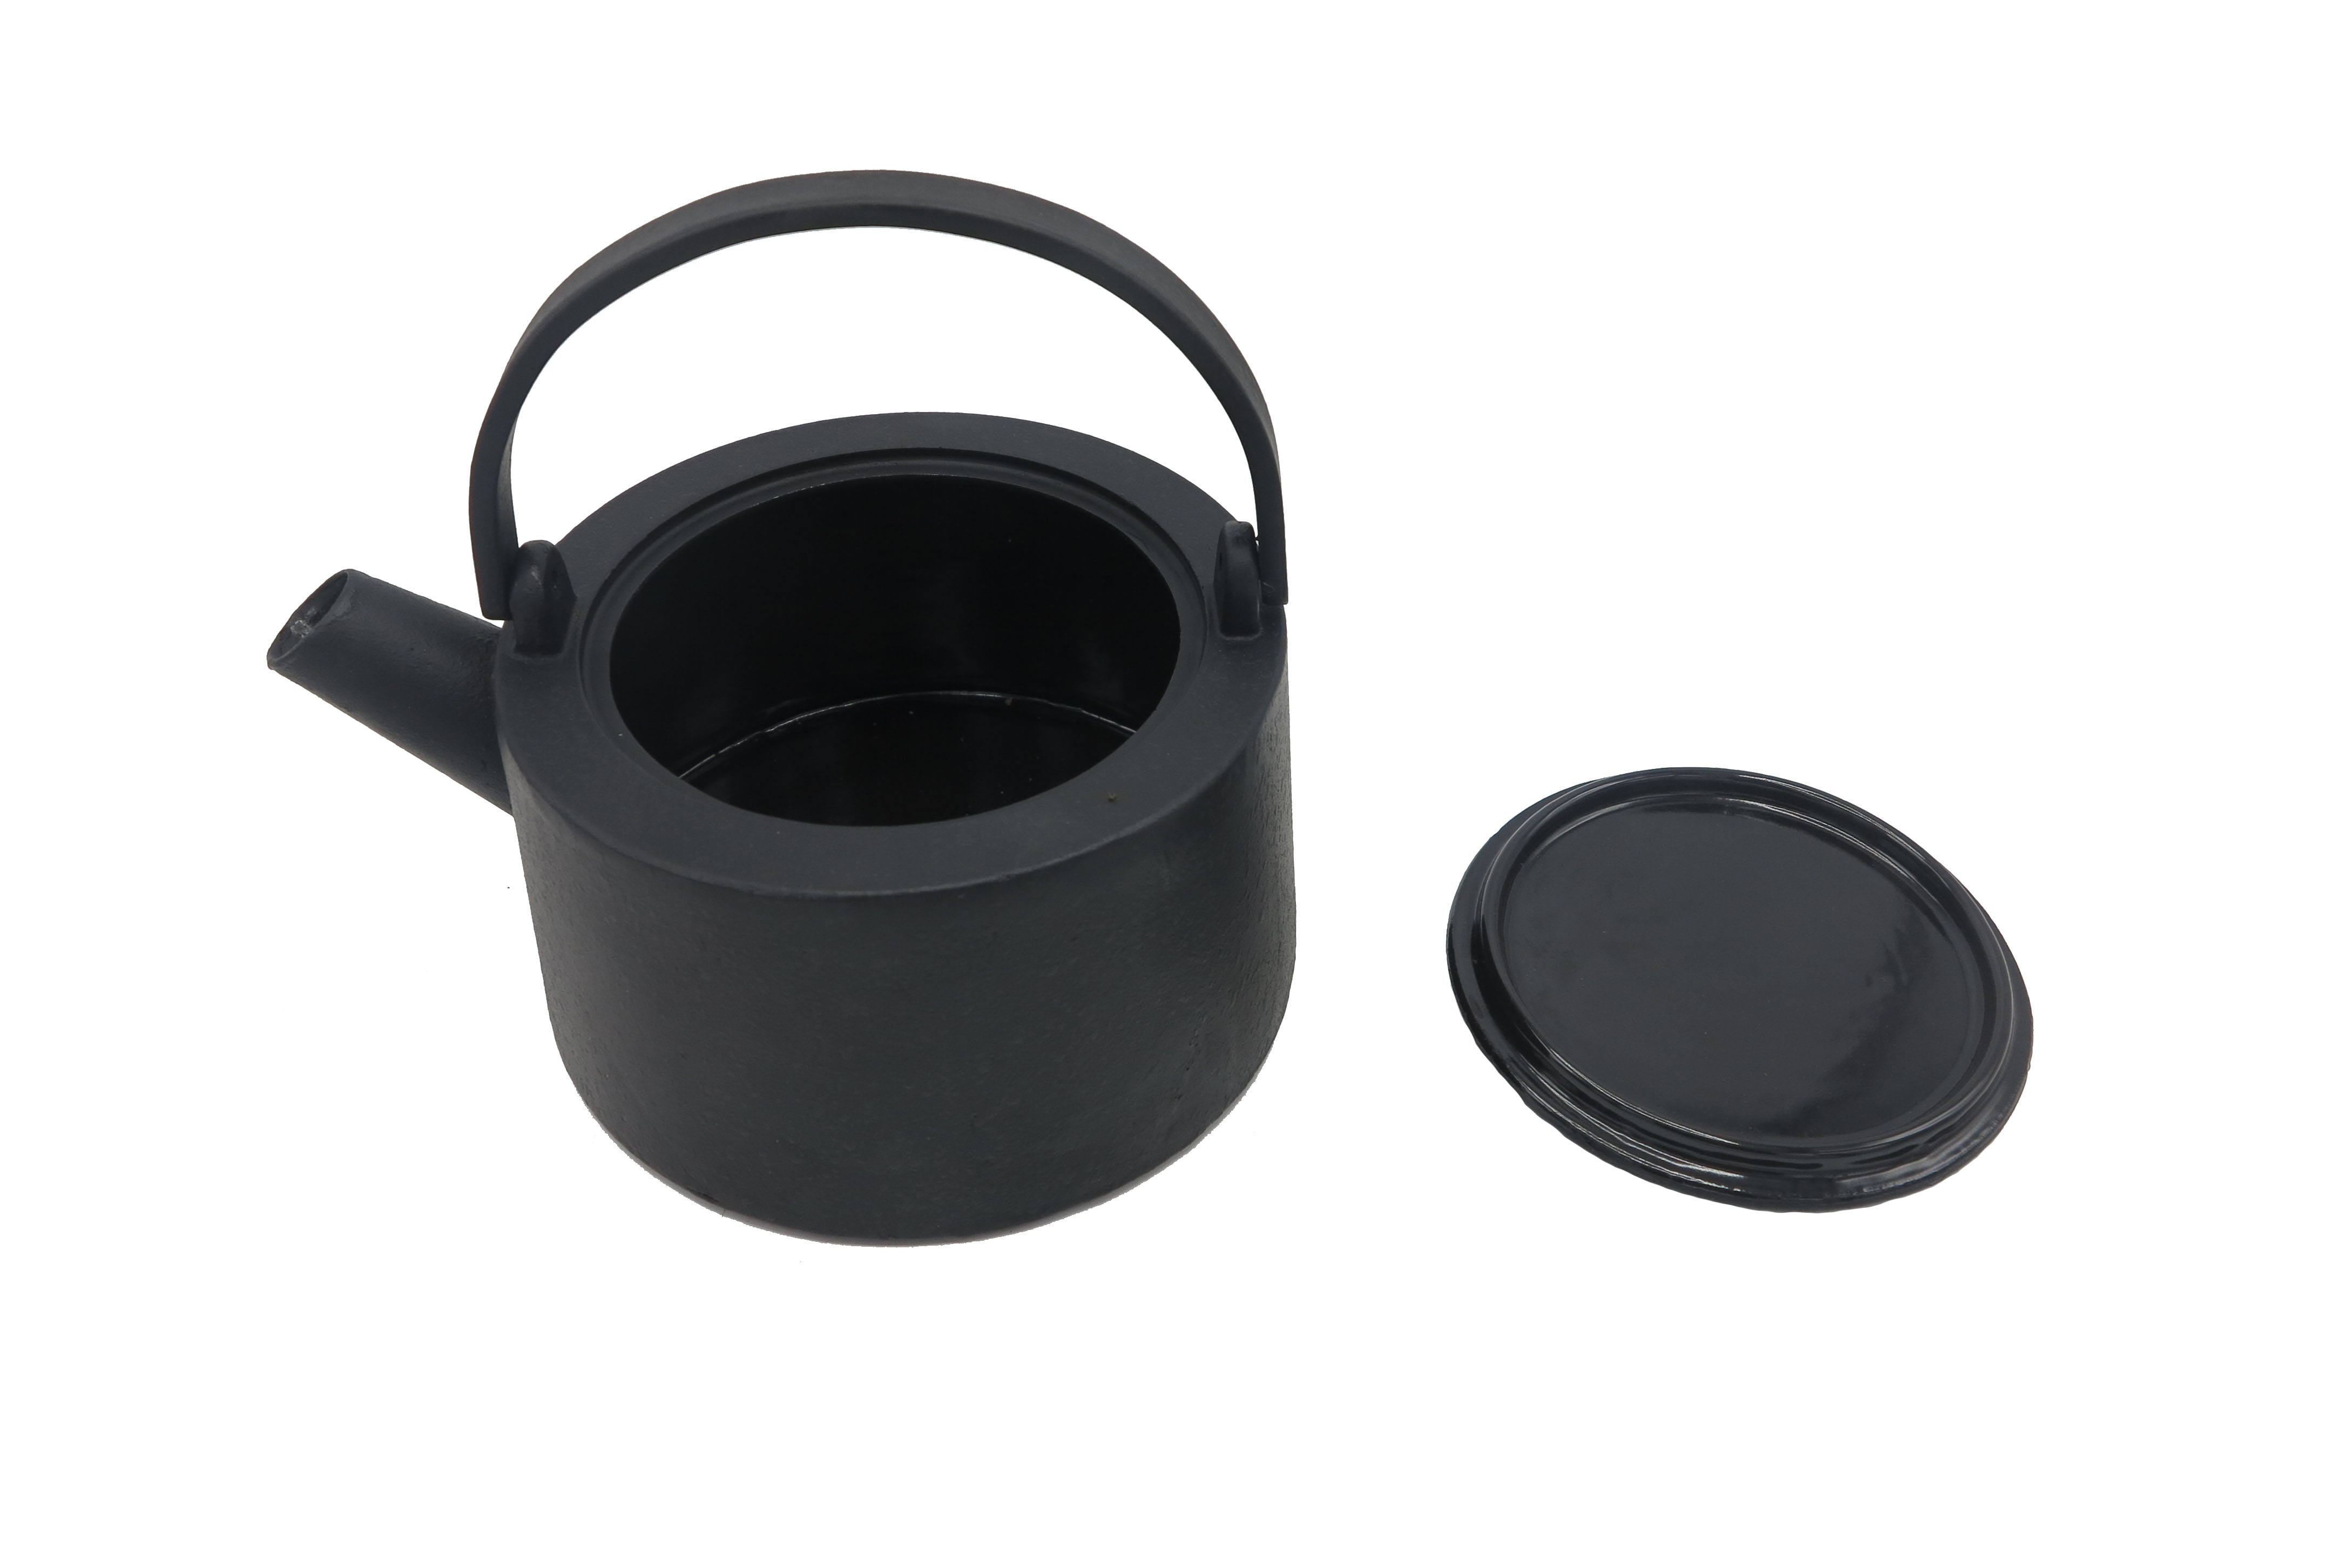 Hervidor de té de hierro fundido negro 1100ml tetera de estilo japonés de hierro fundido